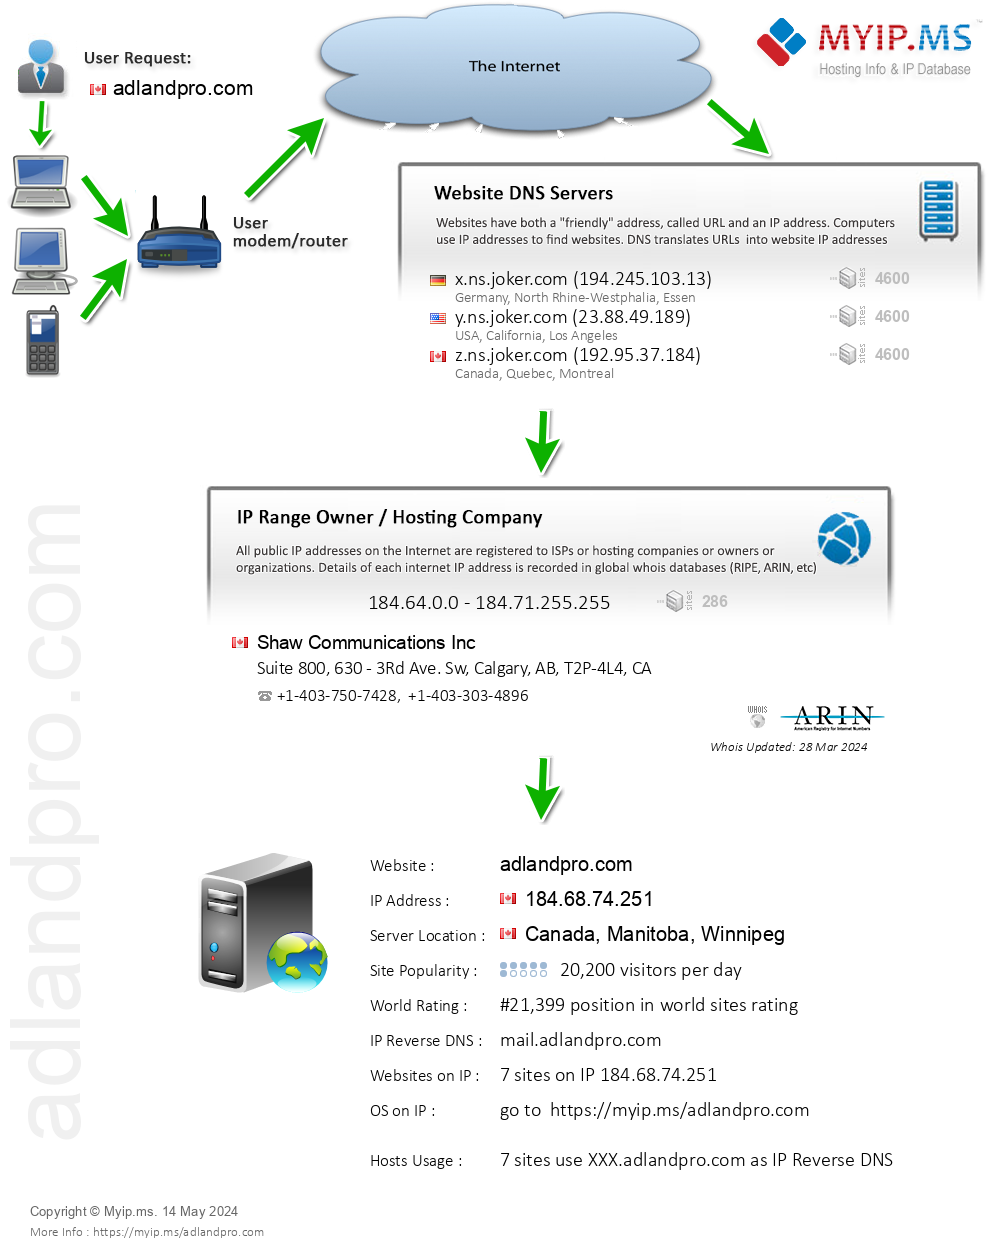 Adlandpro.com - Website Hosting Visual IP Diagram